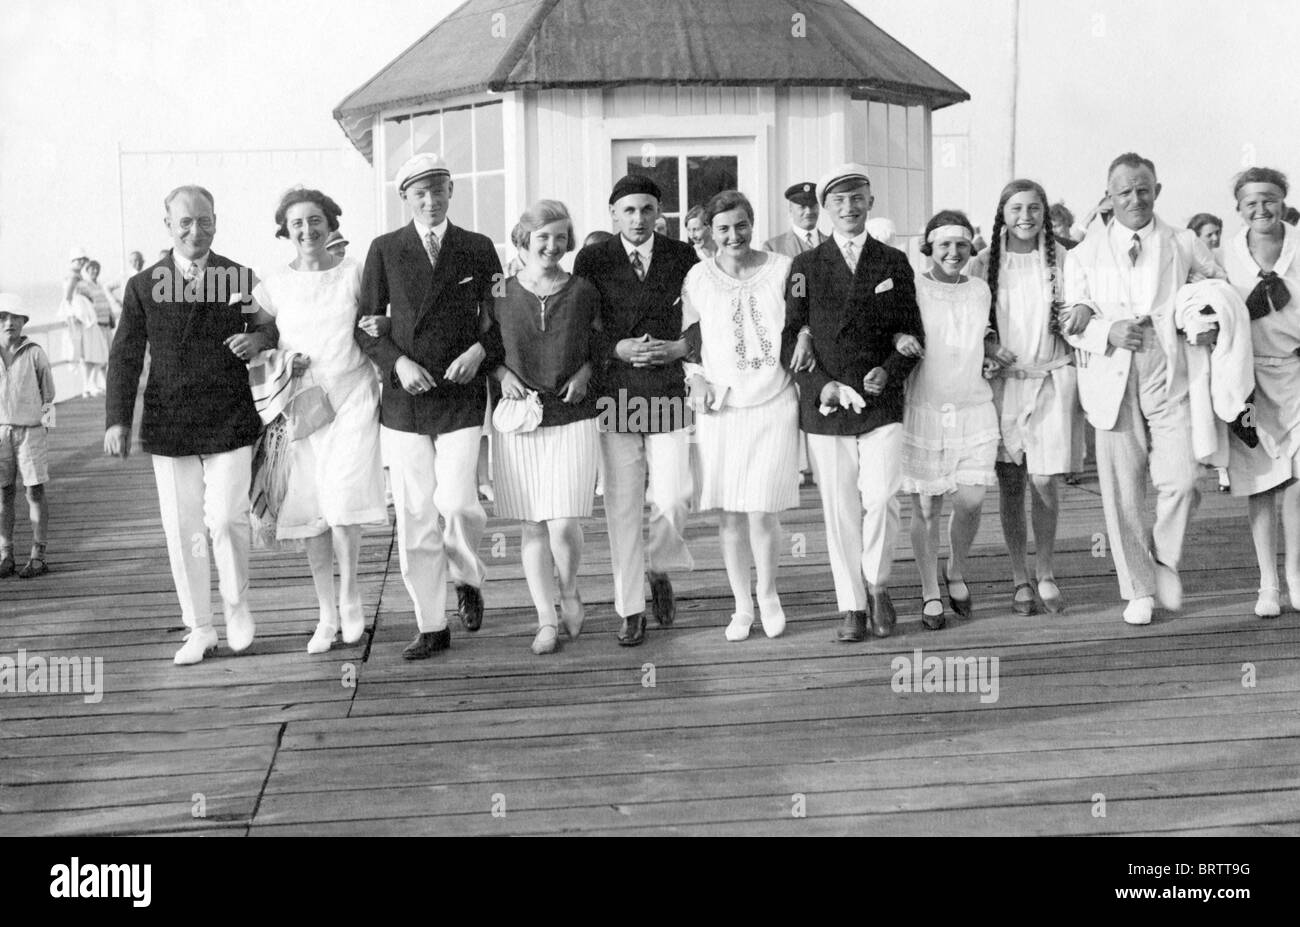 Grupo de vacaciones en el Mar Báltico, imagen histórica, ca. 1932 Foto de stock